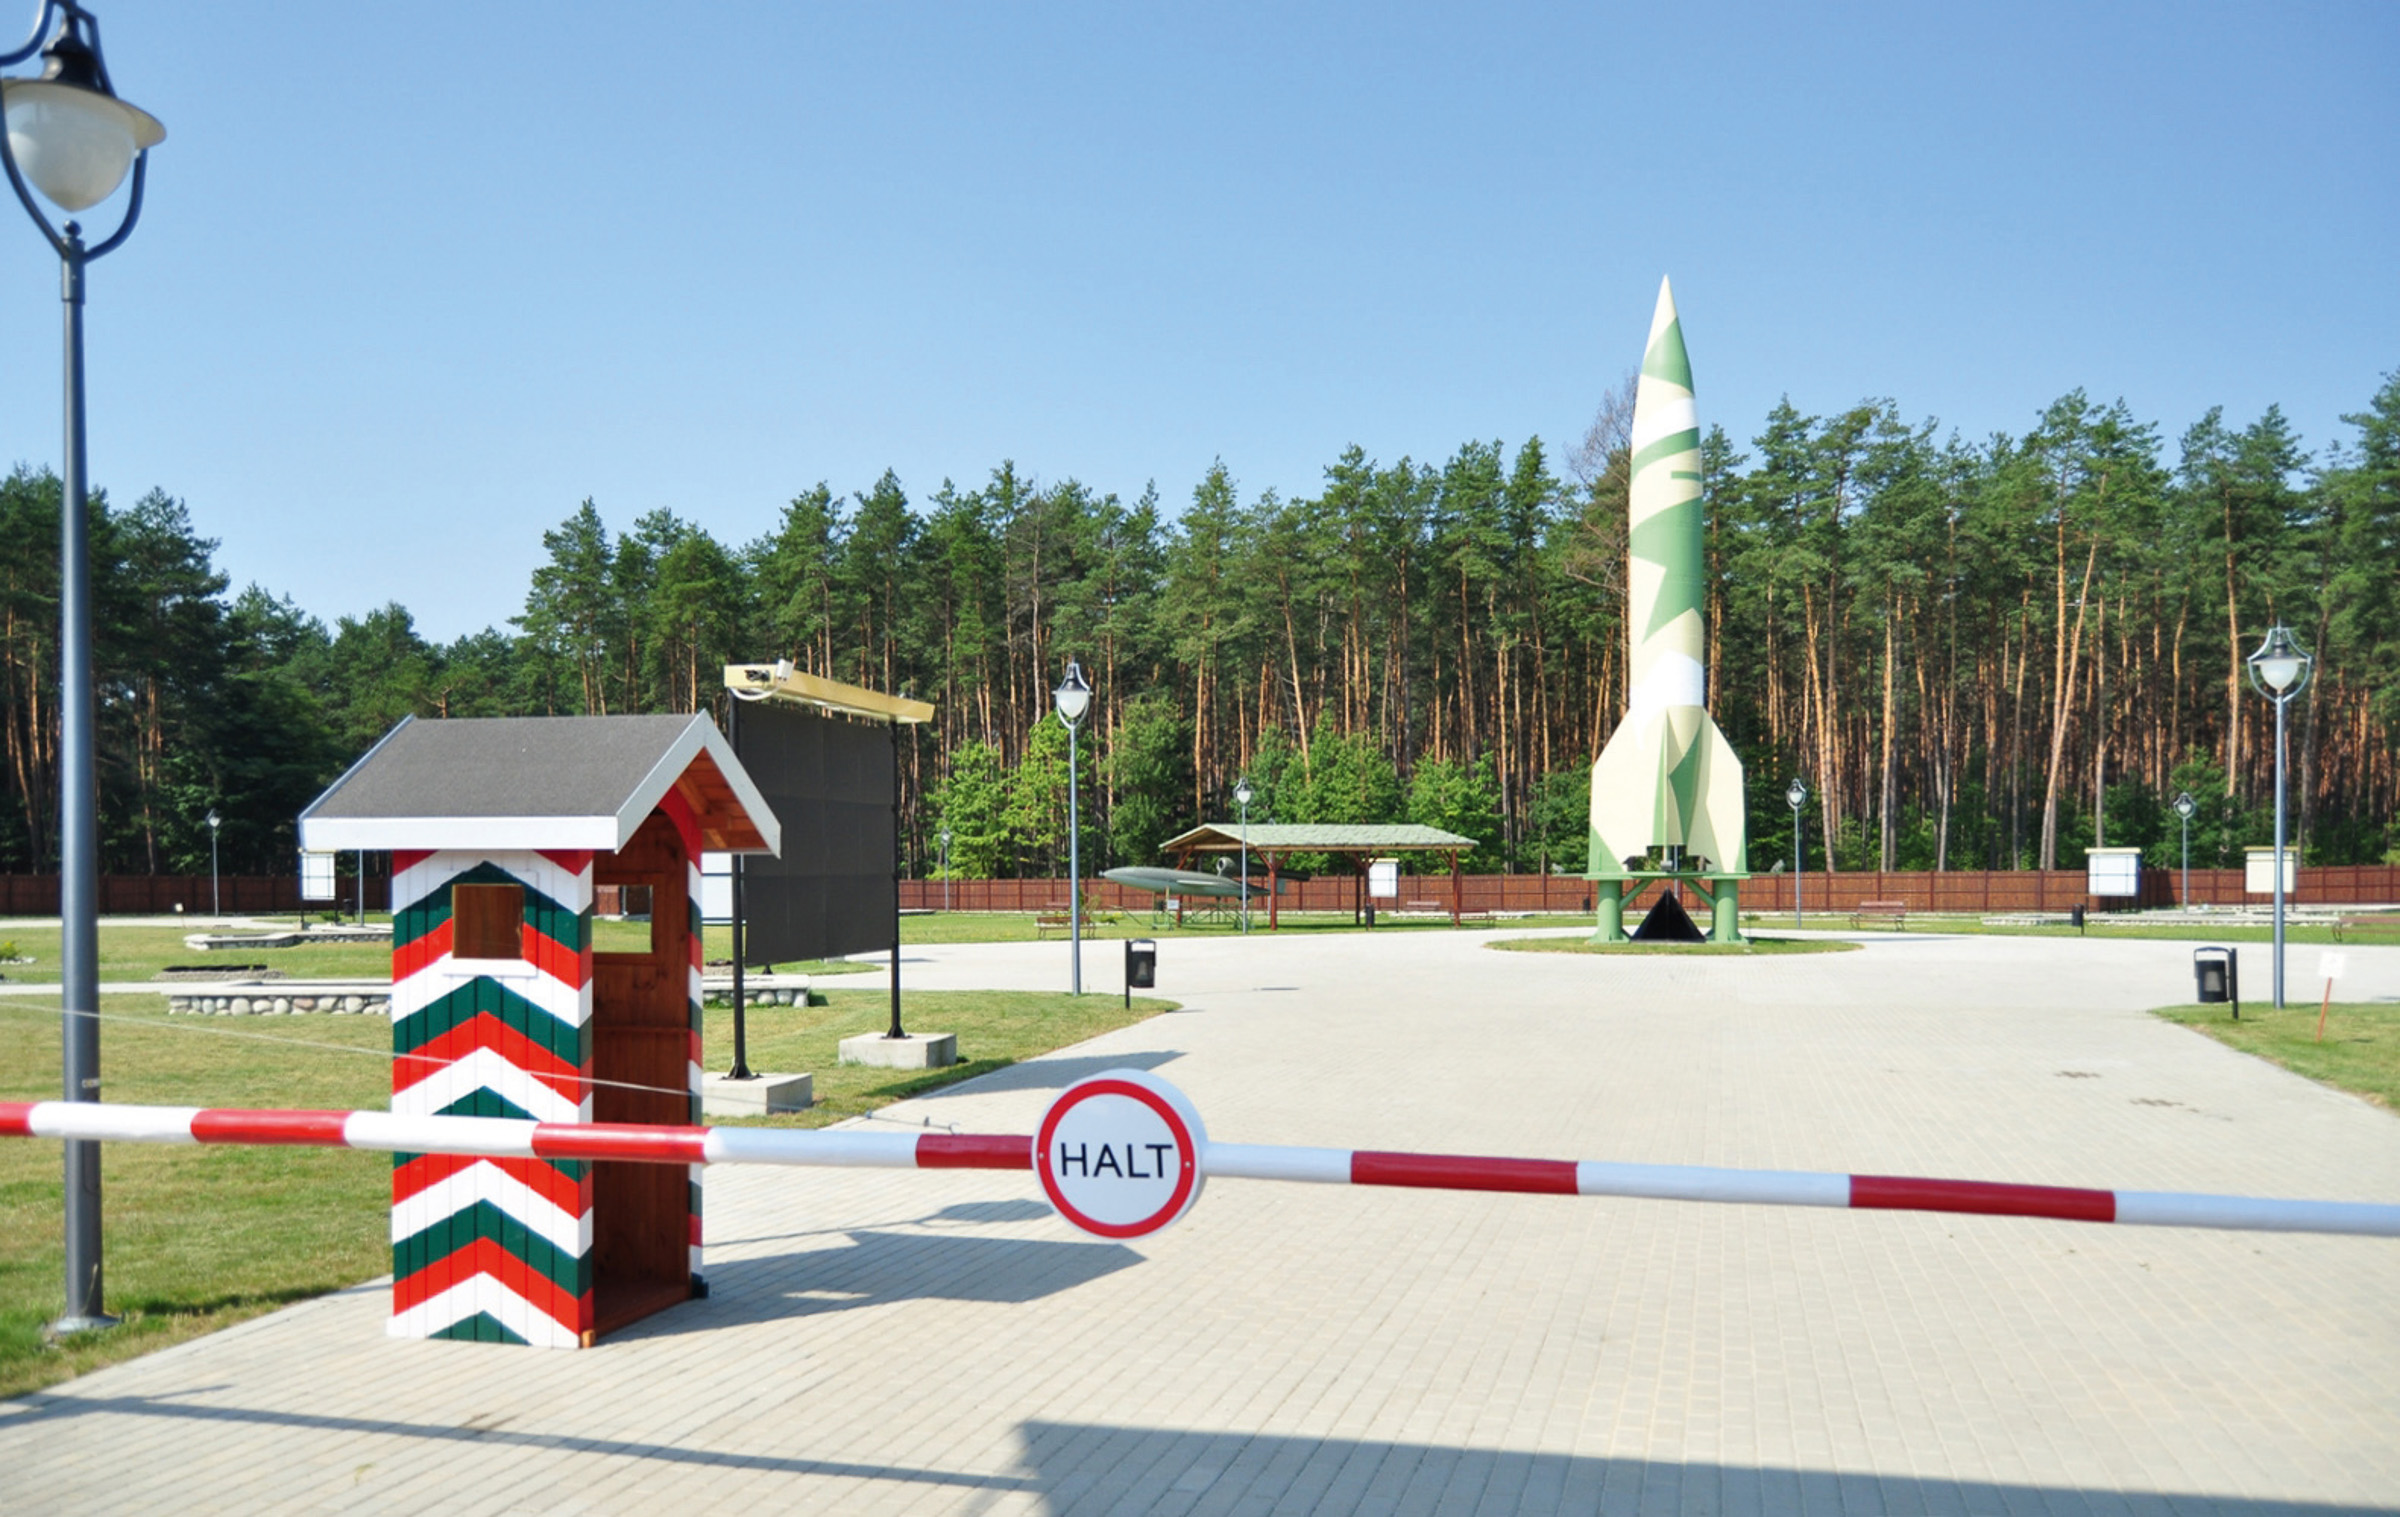 Makieta rakiety V2 na terenie Parku Historycznego w Bliźnie